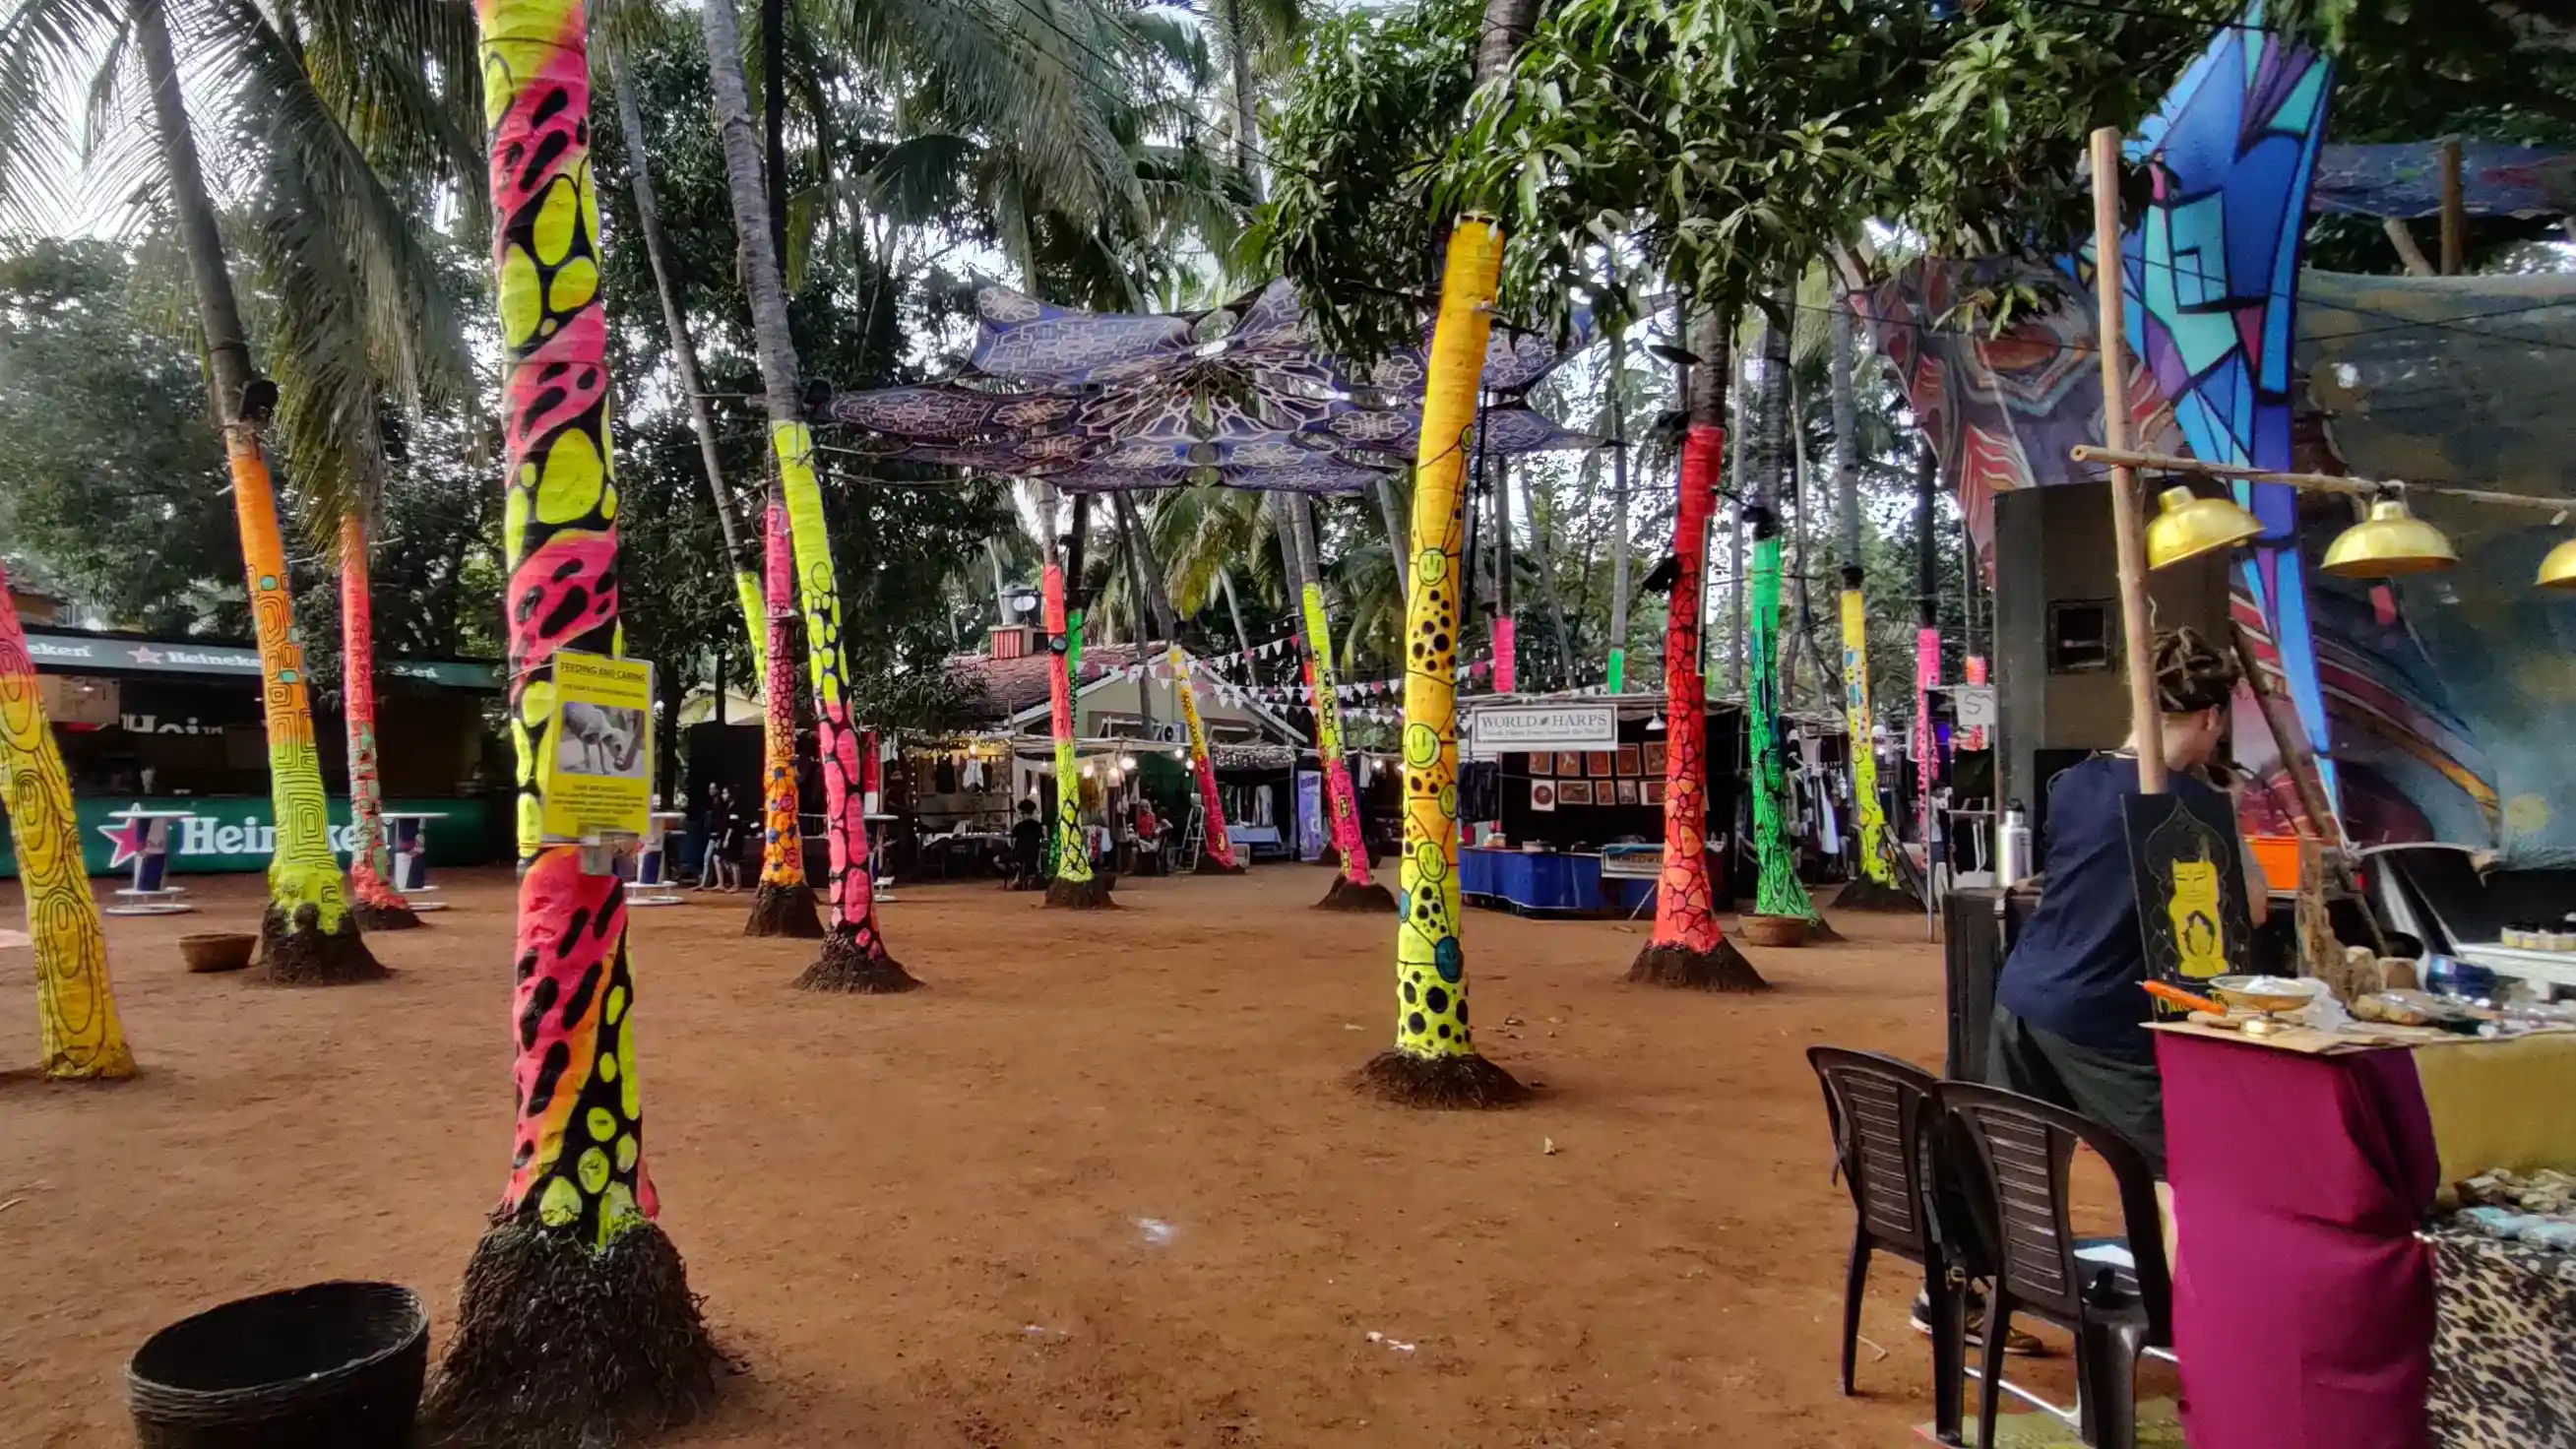 The Goa Collective Bazaar